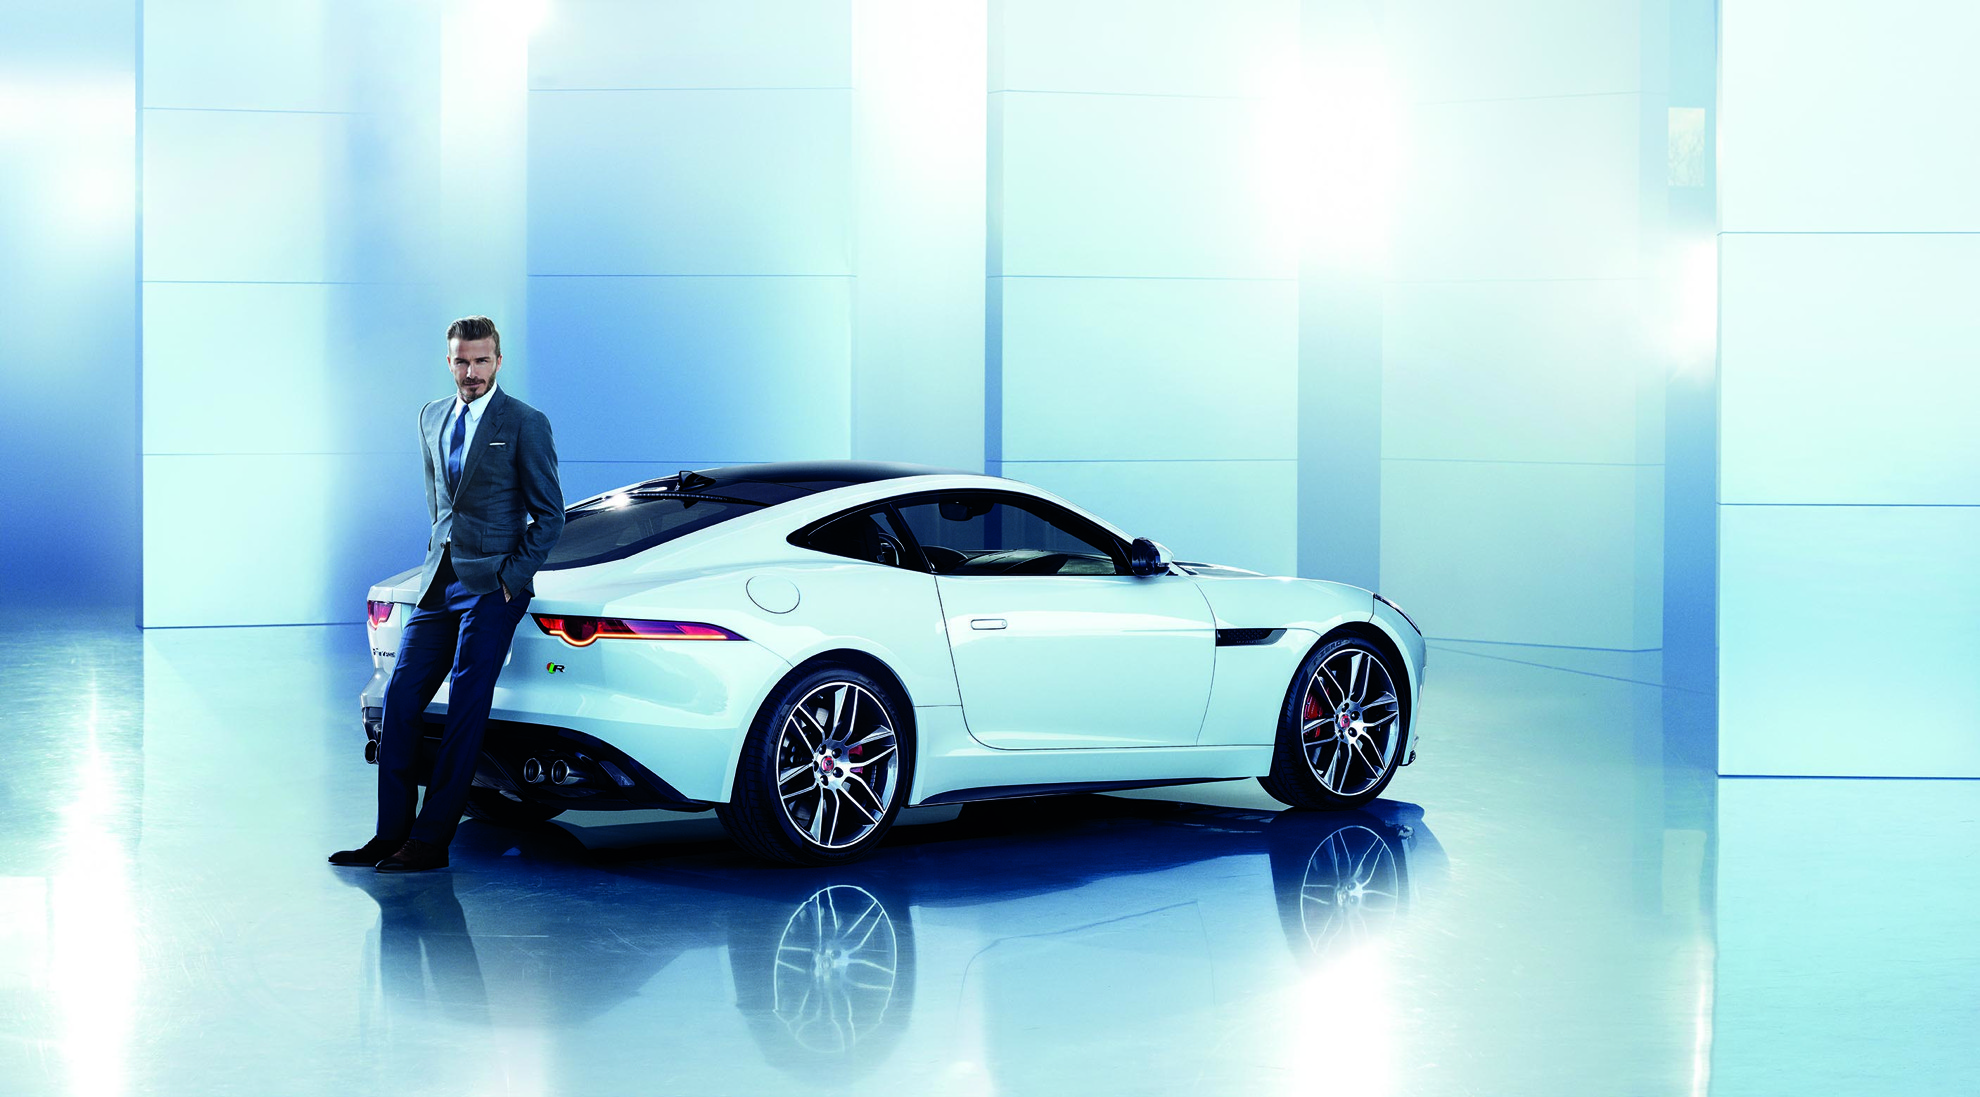 David Beckham Jaguar China Ambassador